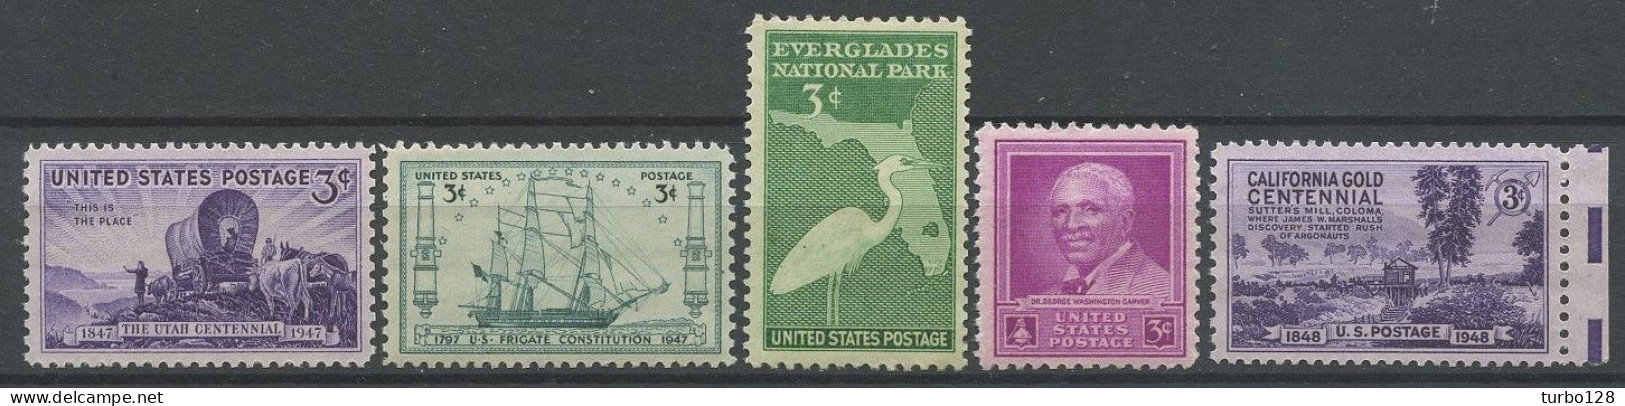 EU 1947 N° 501/505 ** Neufs MNH Superbes C 2.30 € Utah Bateau Voilier Sailboat Constitution Oiseau Bird Héron Carver Or - Nuevos